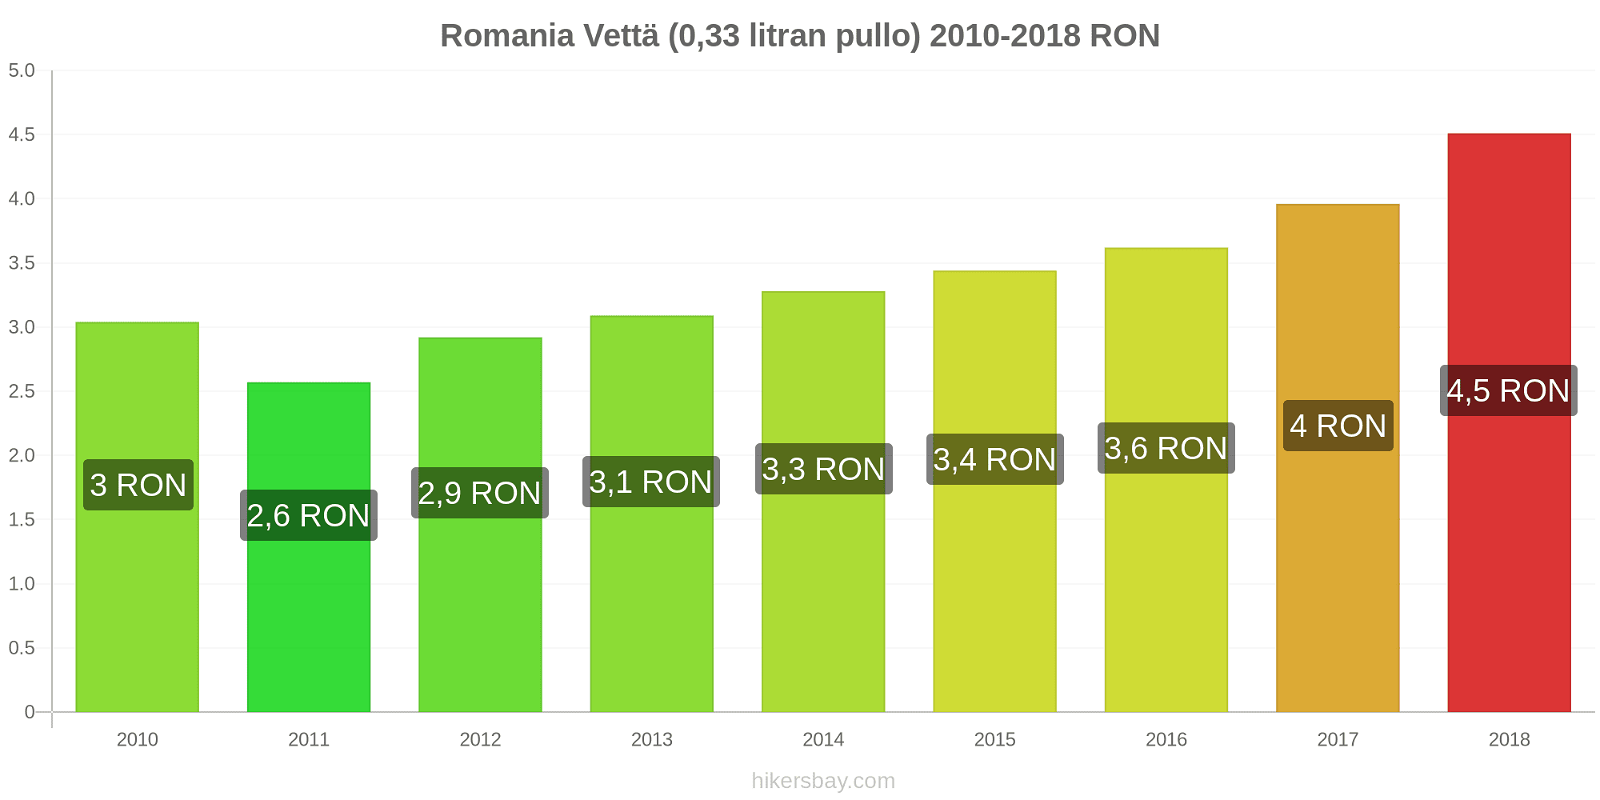 Romania hintojen muutokset Vettä (0,33 litran pullo) hikersbay.com